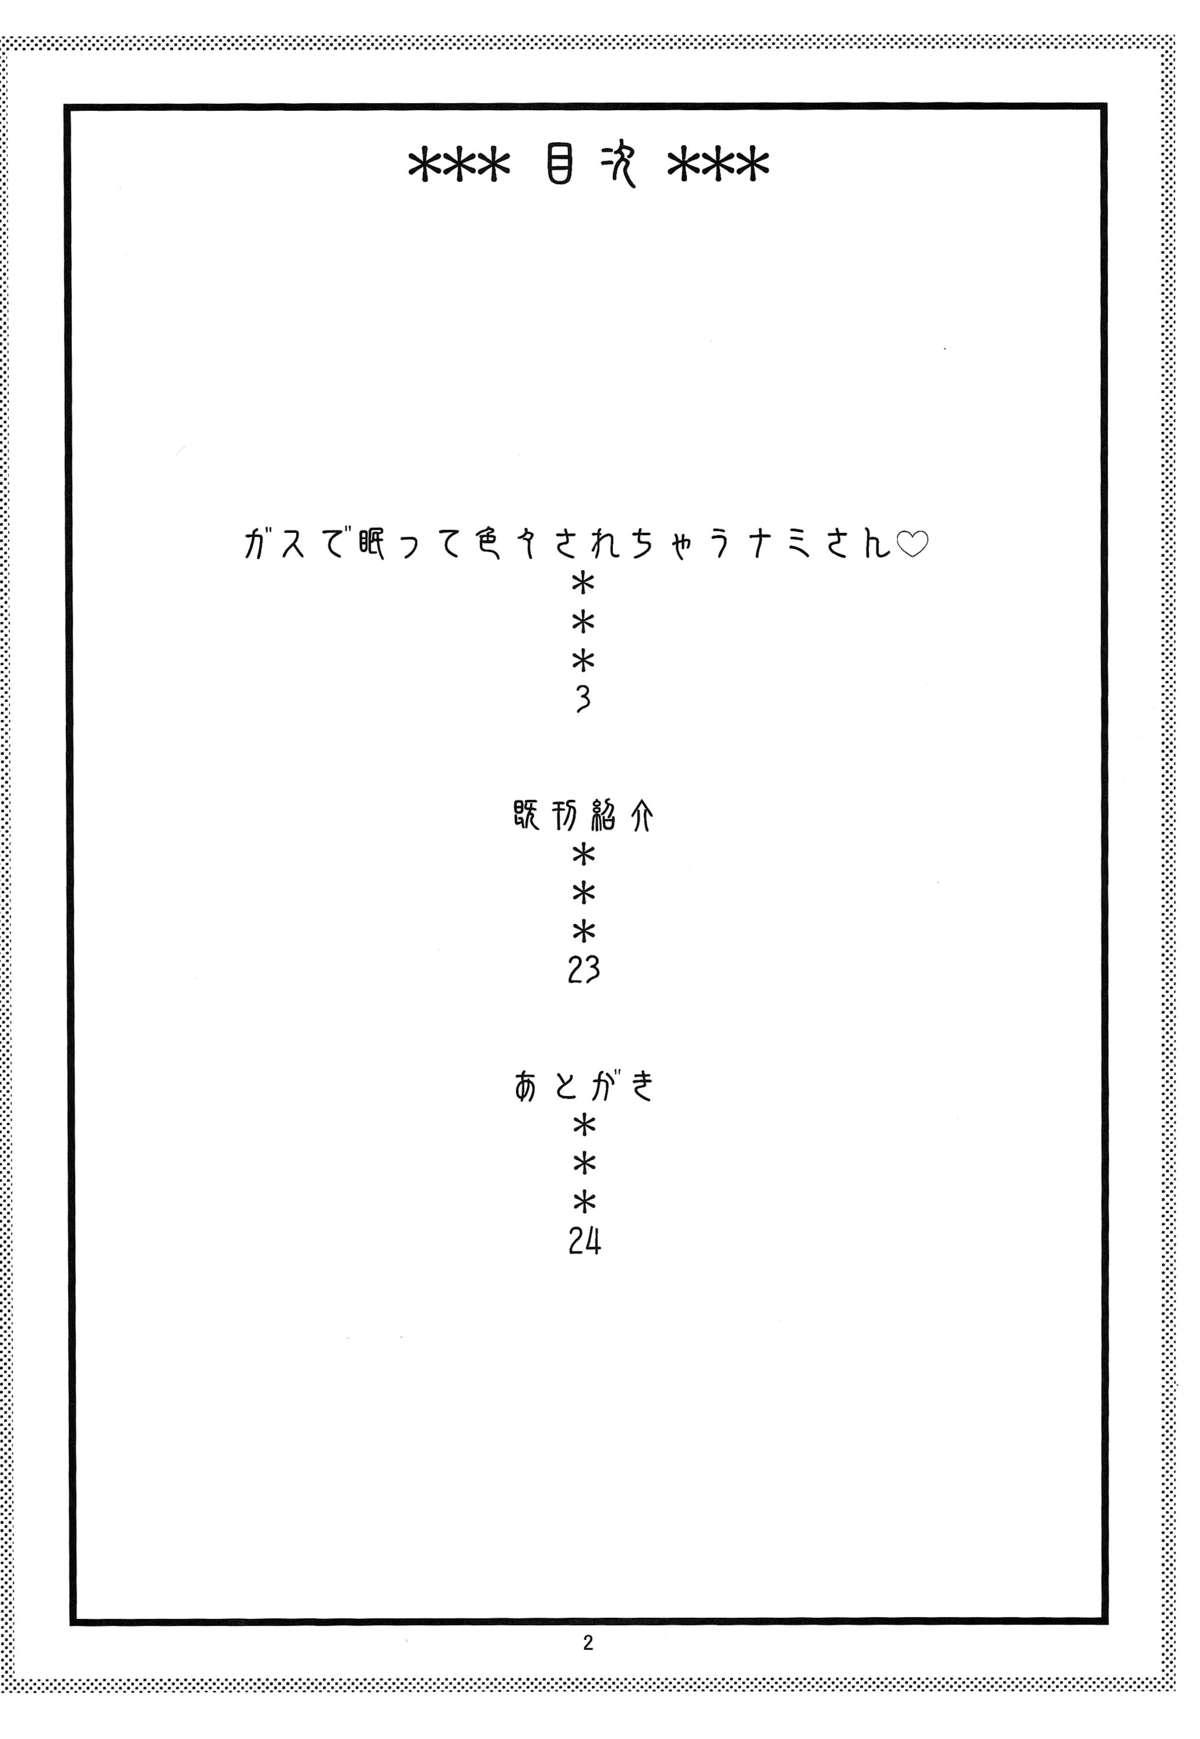 Blow Nami no Ura Koukai Nisshi 7 - One piece Milfs - Page 3